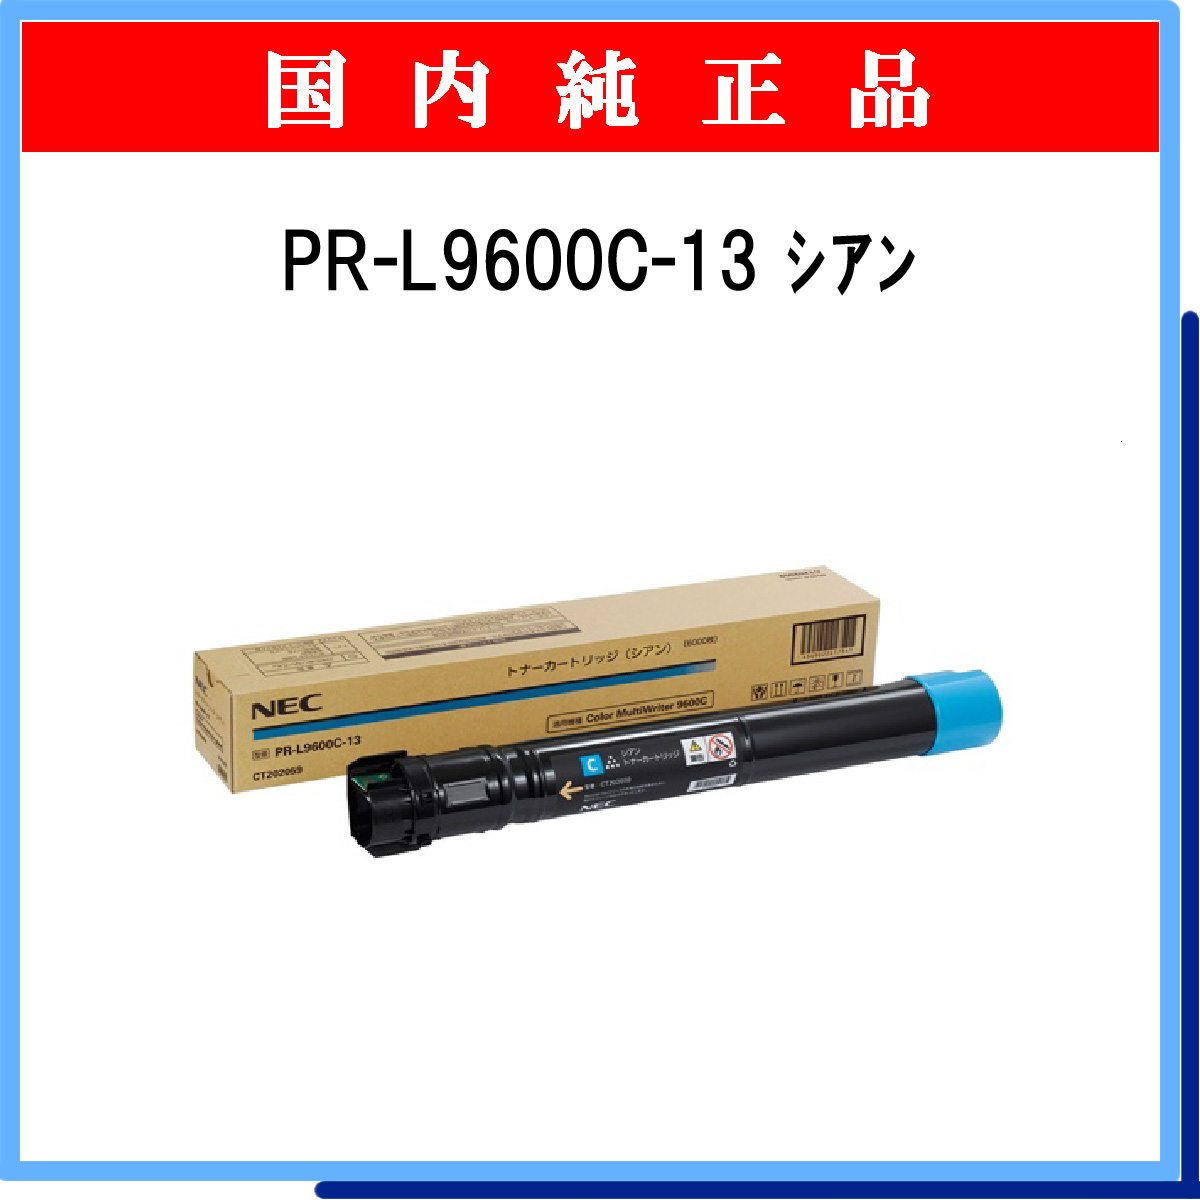 PR-L9600C-13 純正